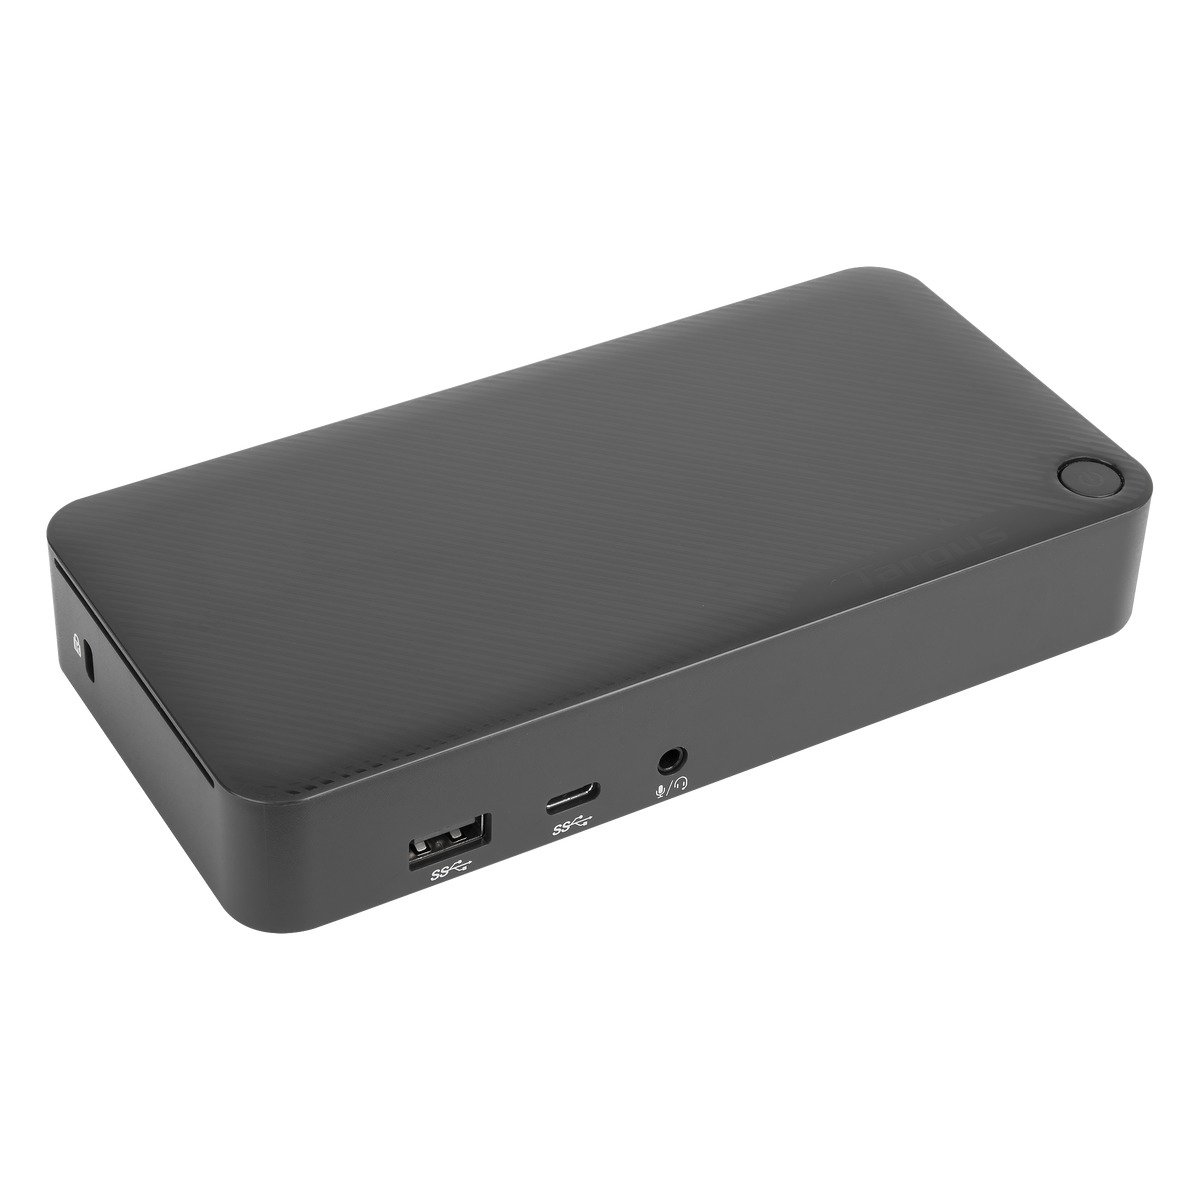 Targus DOCK310EUZ notebook dock/port replicator Wired USB 3.2 Gen 1 (3.1 Gen 1) Type-C Black - DOCK310EUZ